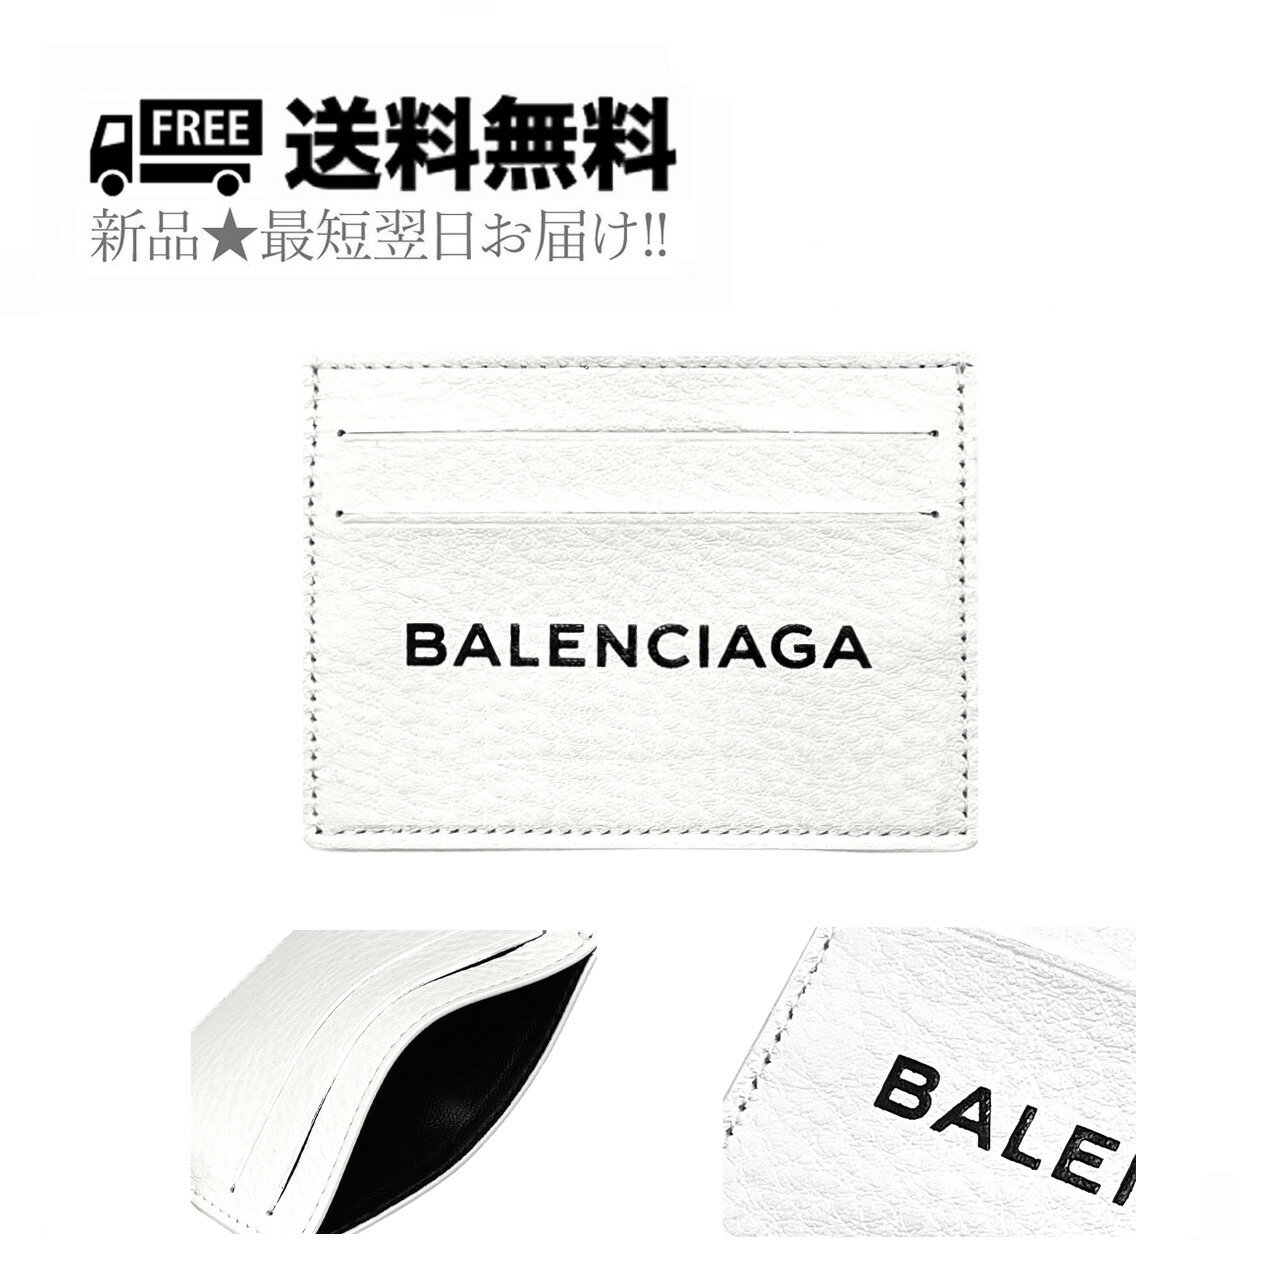 BALENCIAGA バレンシアガ ロゴ エブリデイ マルチカードケース カードケース 名刺 レザー イタリア製 新品 ★ 9002 ホワイト